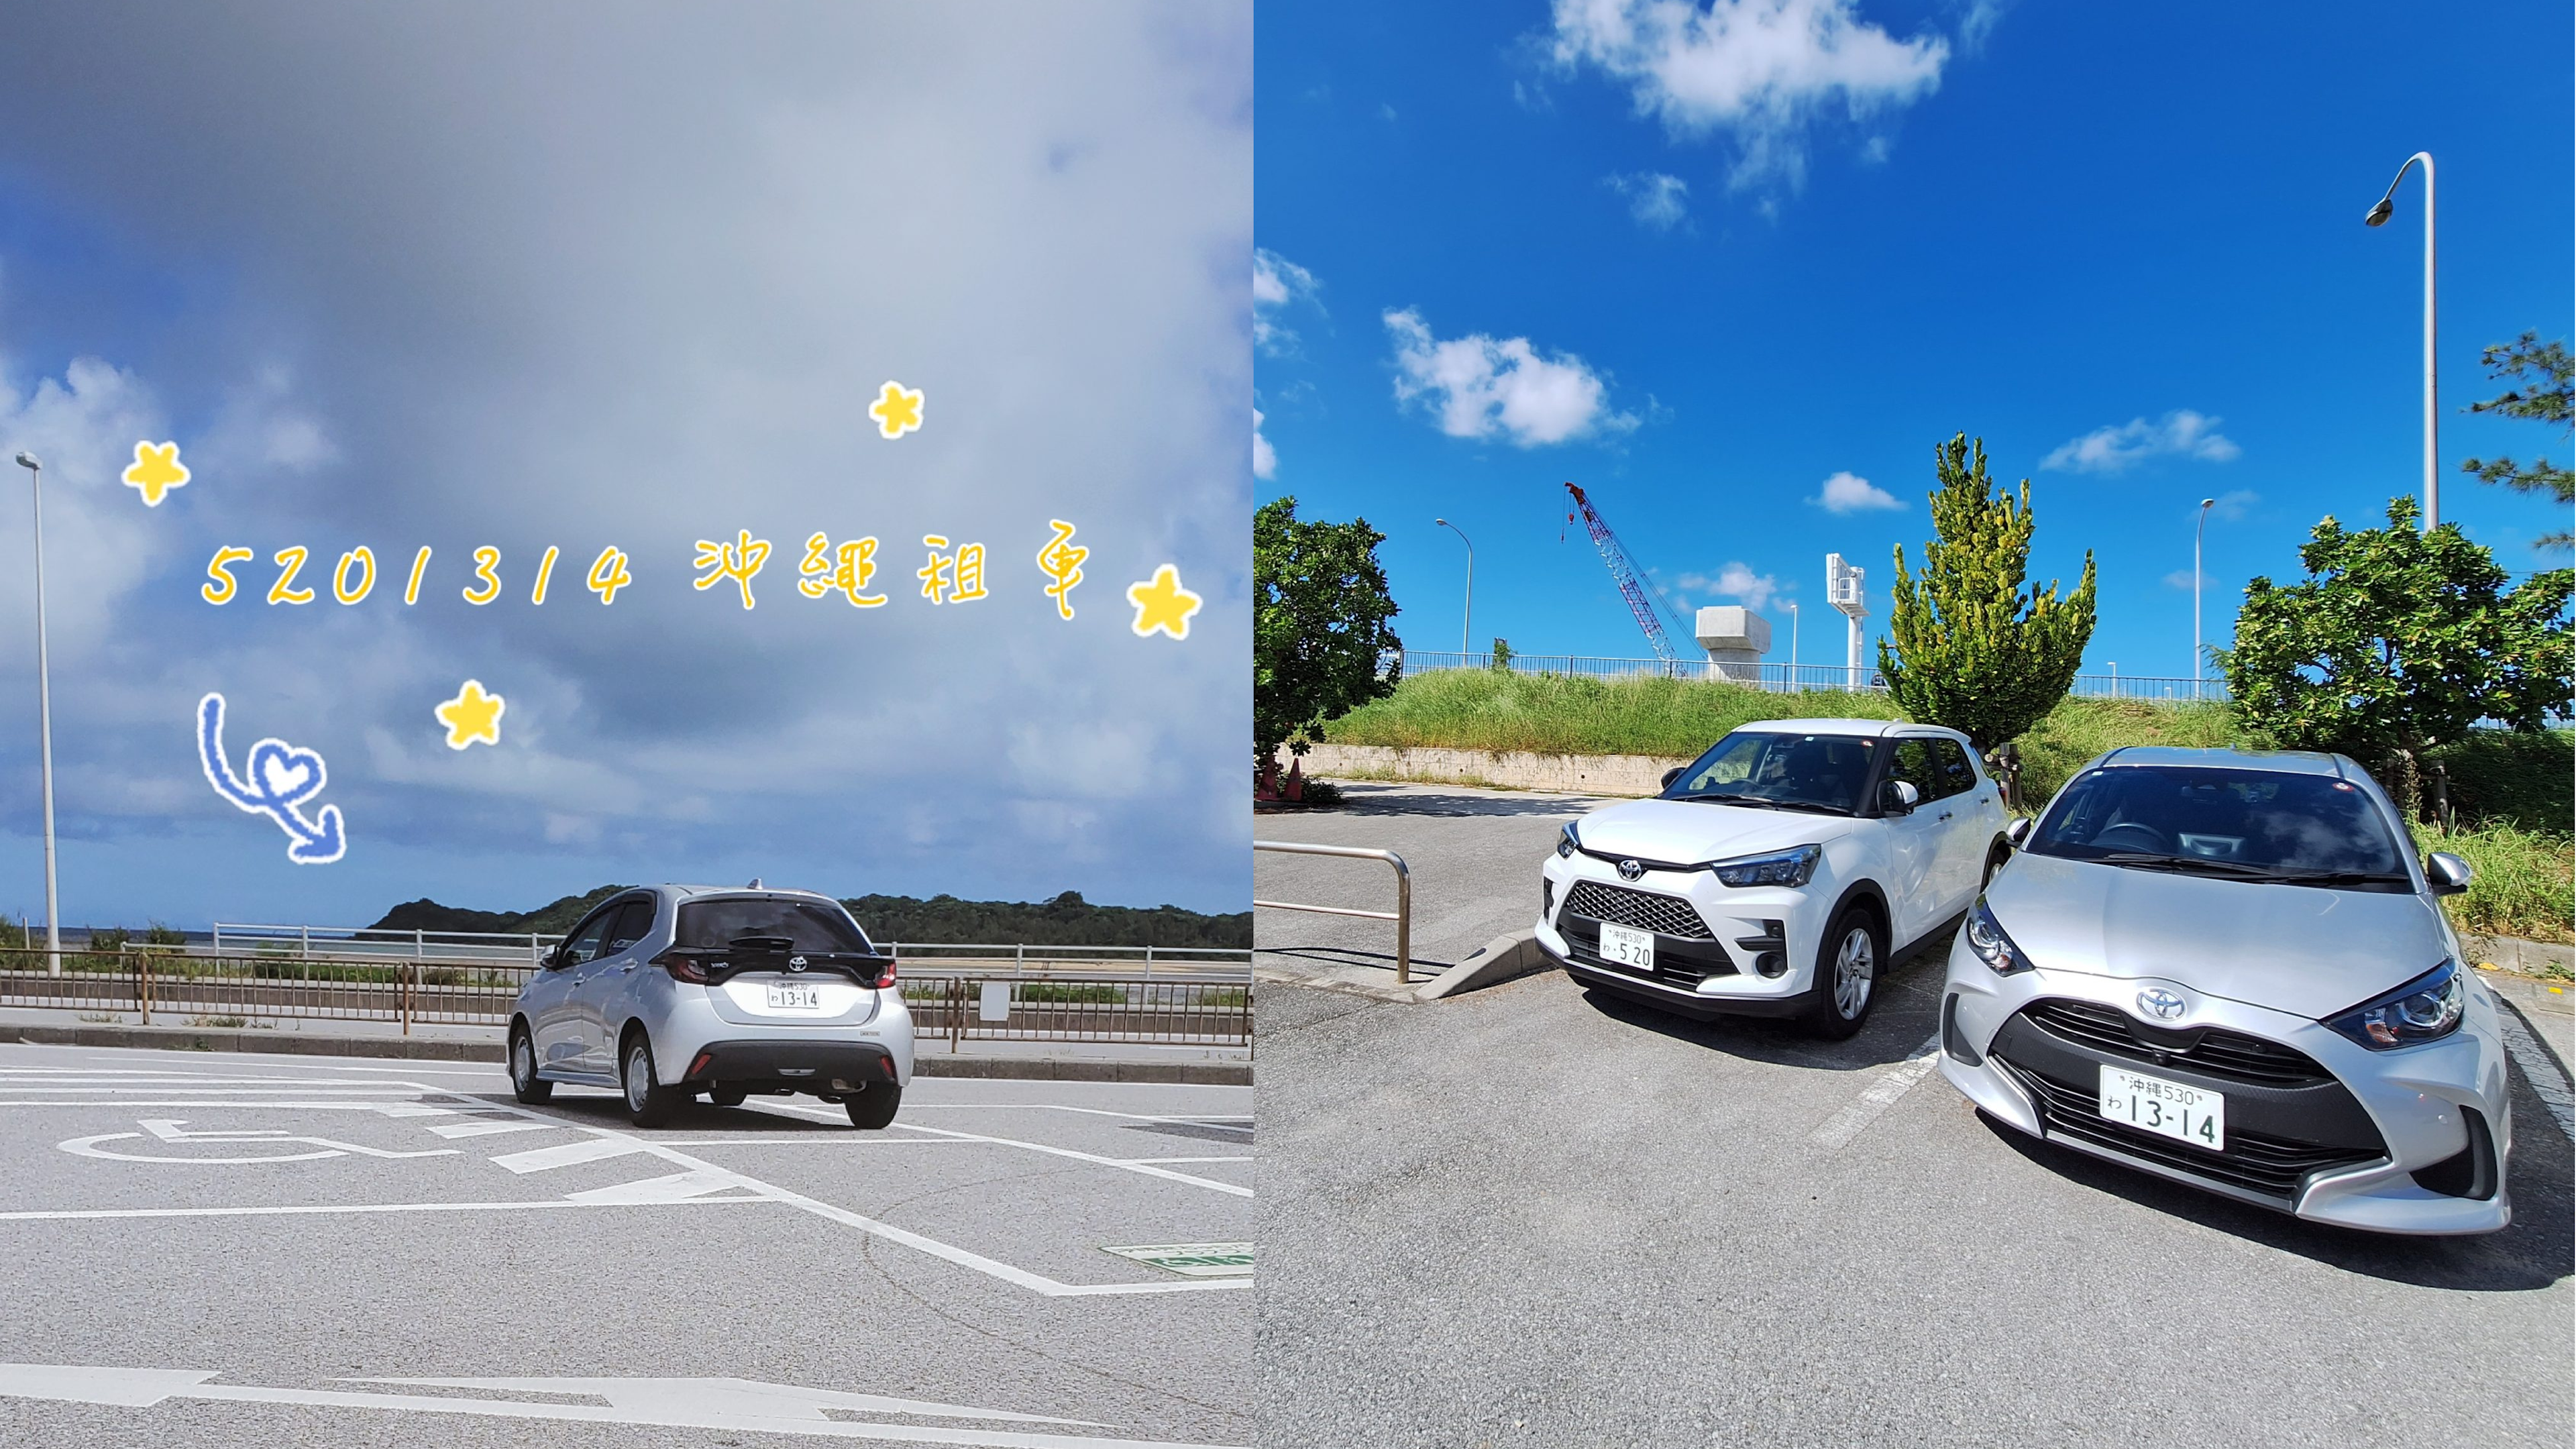 5201314 Okinawa Car Rental